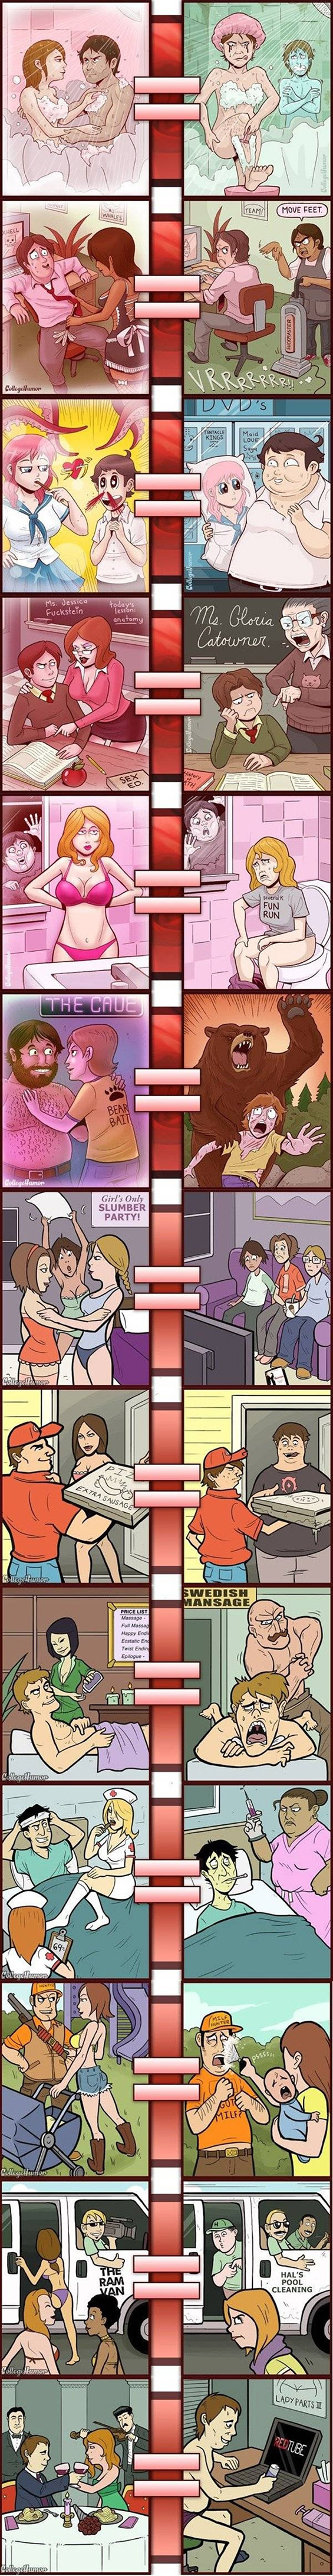 Порно vs. реалност